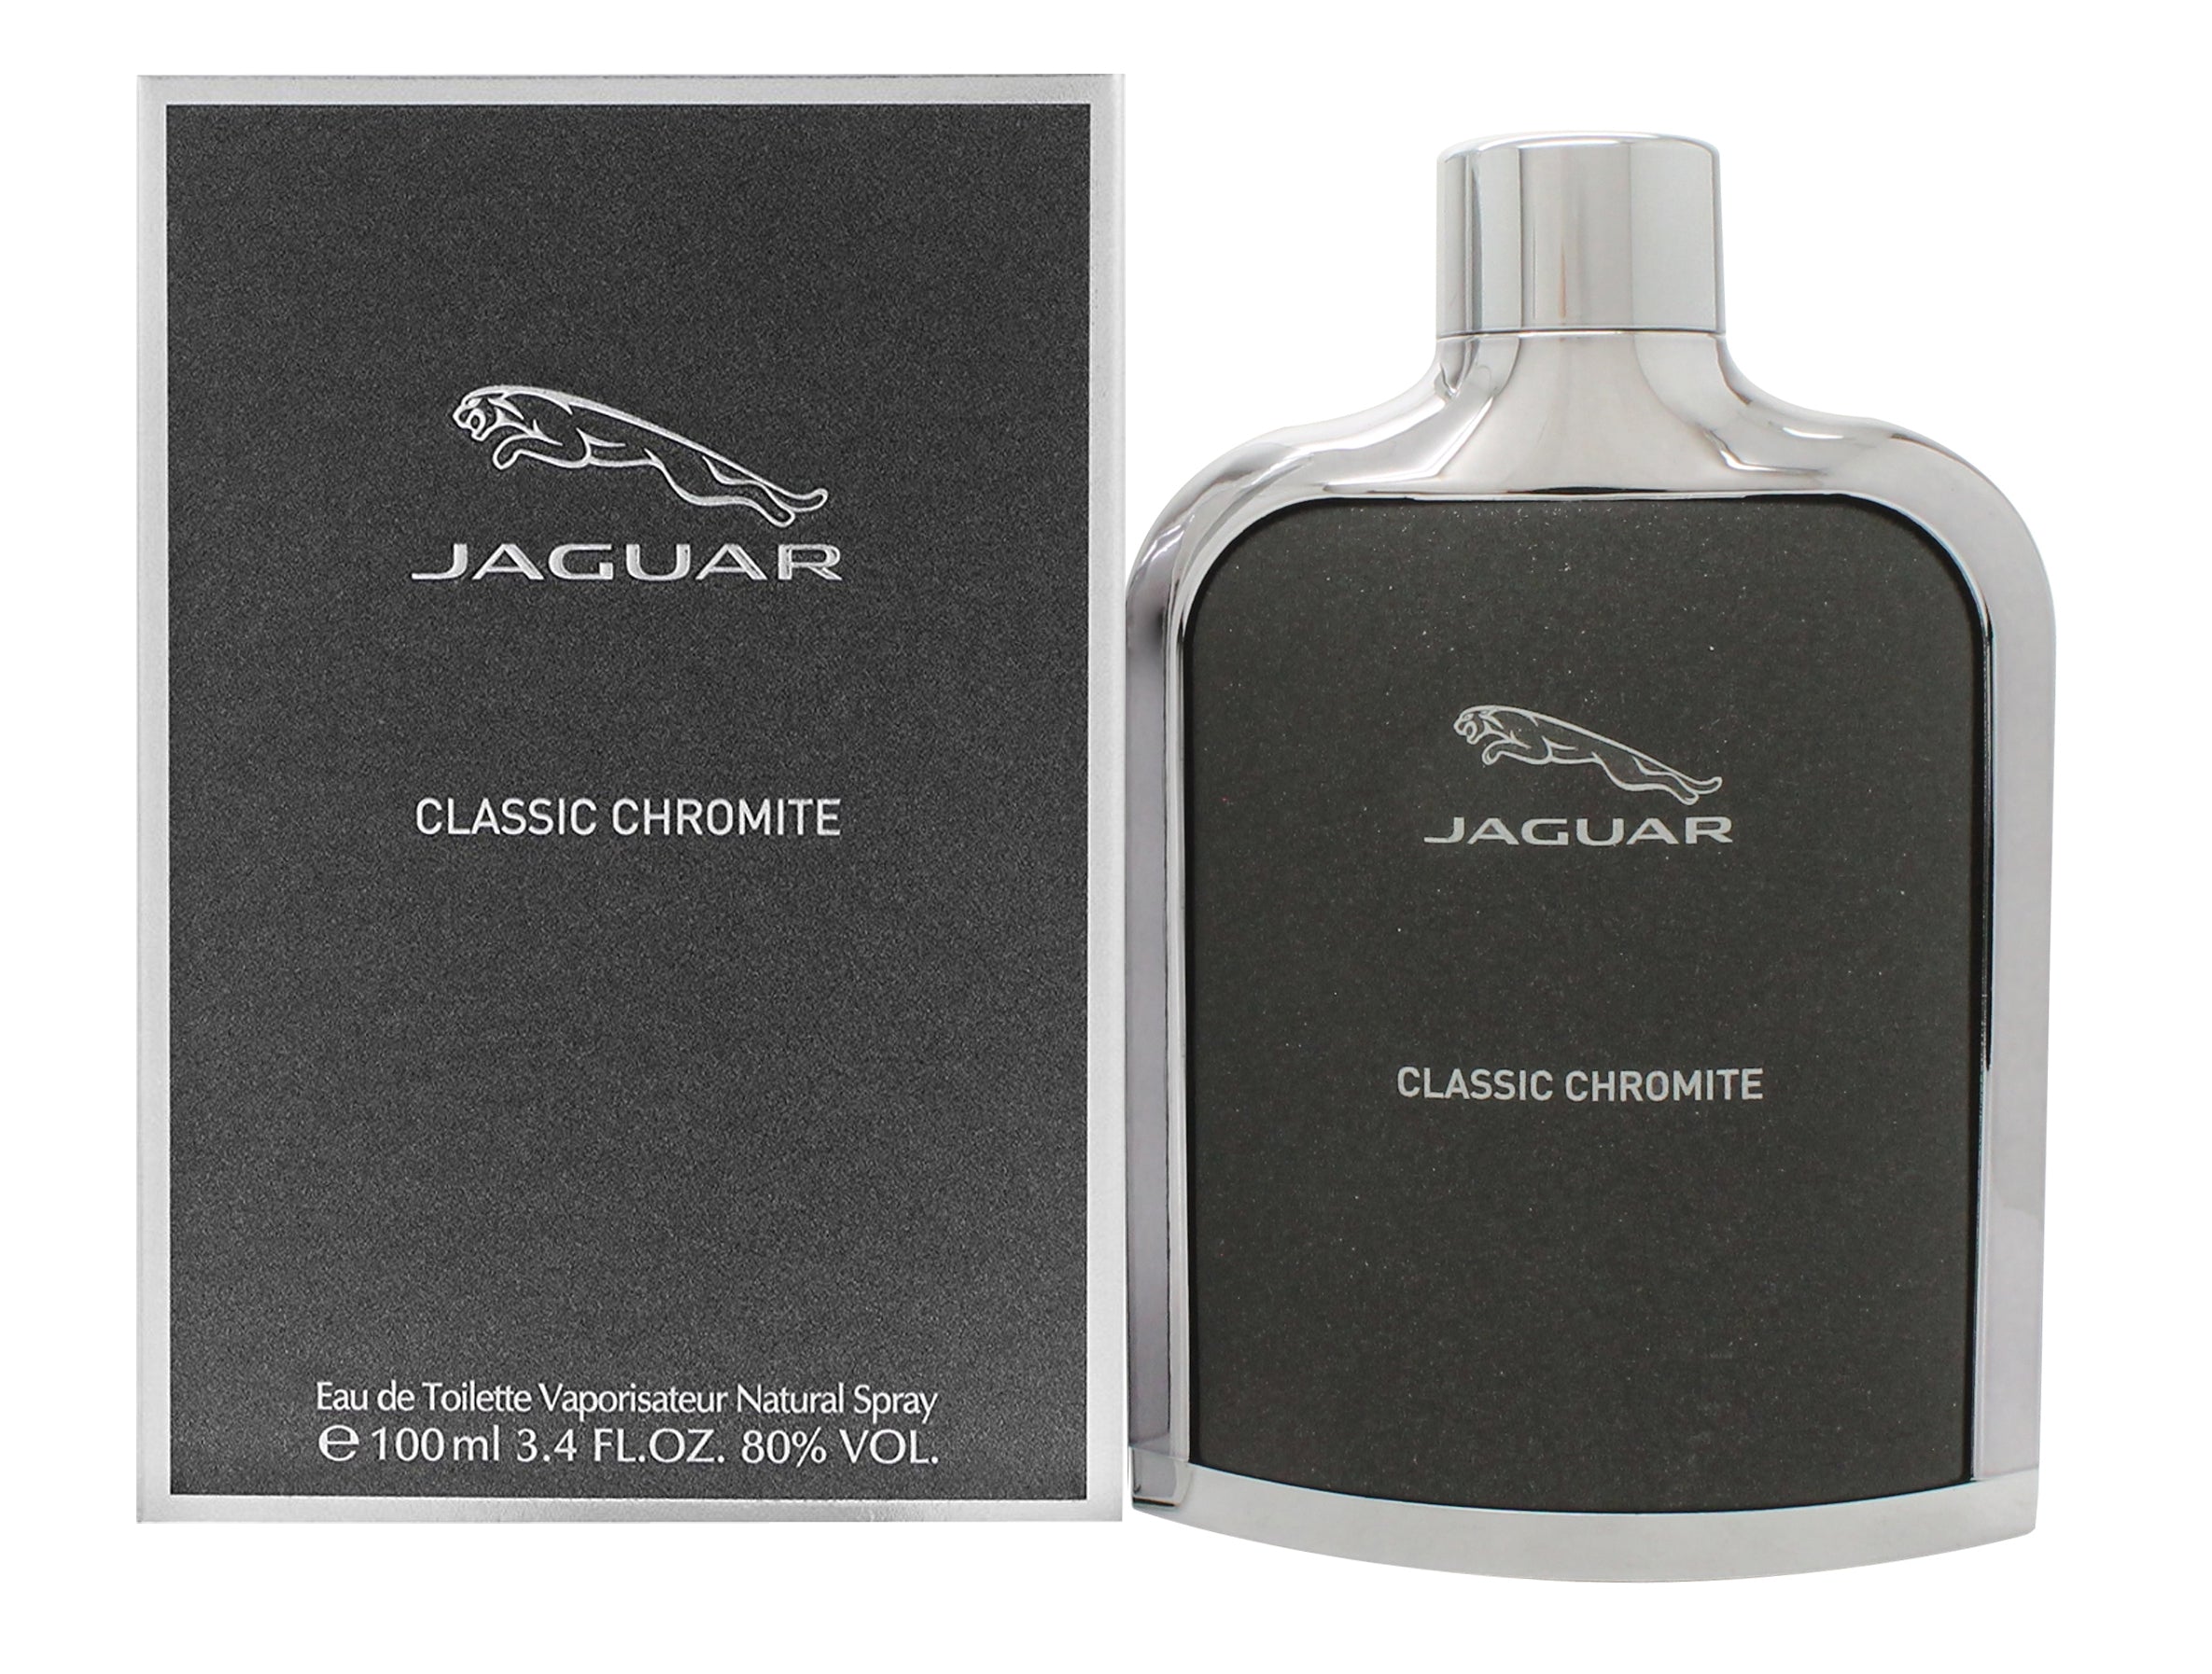 View Jaguar Classic Chromite Eau de Toilette 100ml Spray information